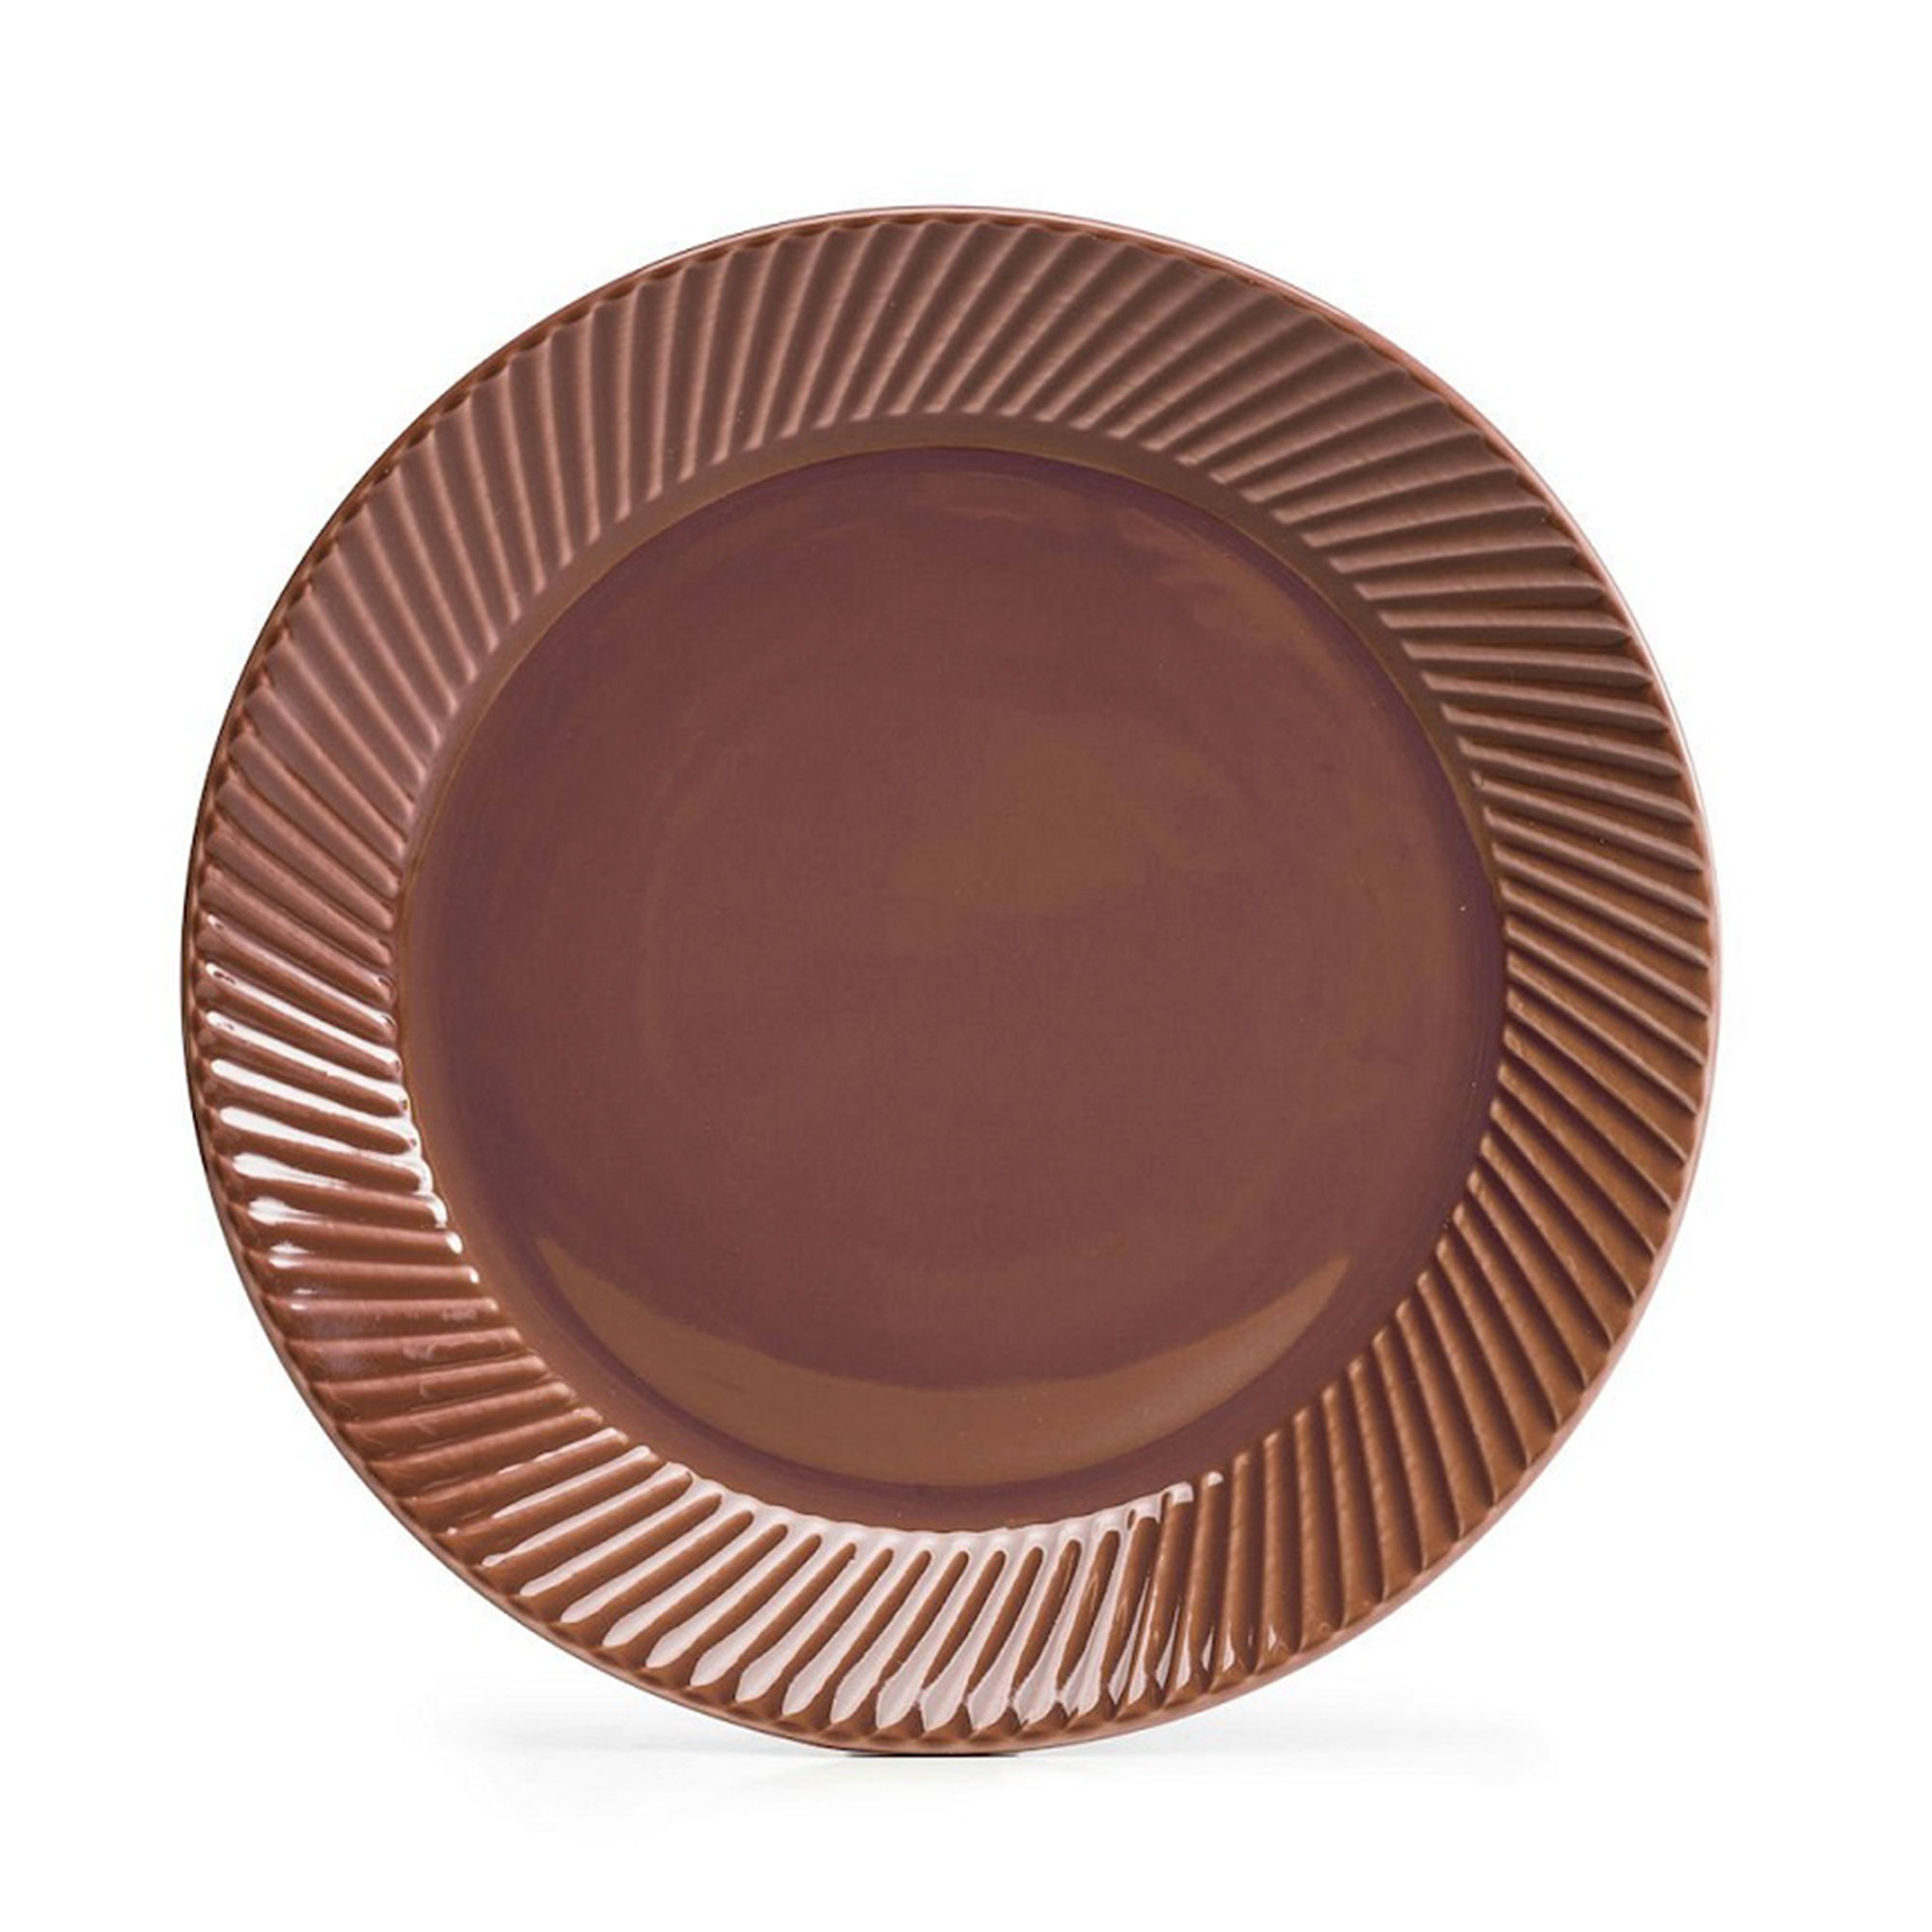 Шоколадная тарелка. Sagaform тарелка Coffee & more. Sagaform тарелка, 20 см. Тарелки коричневые для кухни. Кофе в тарелке.